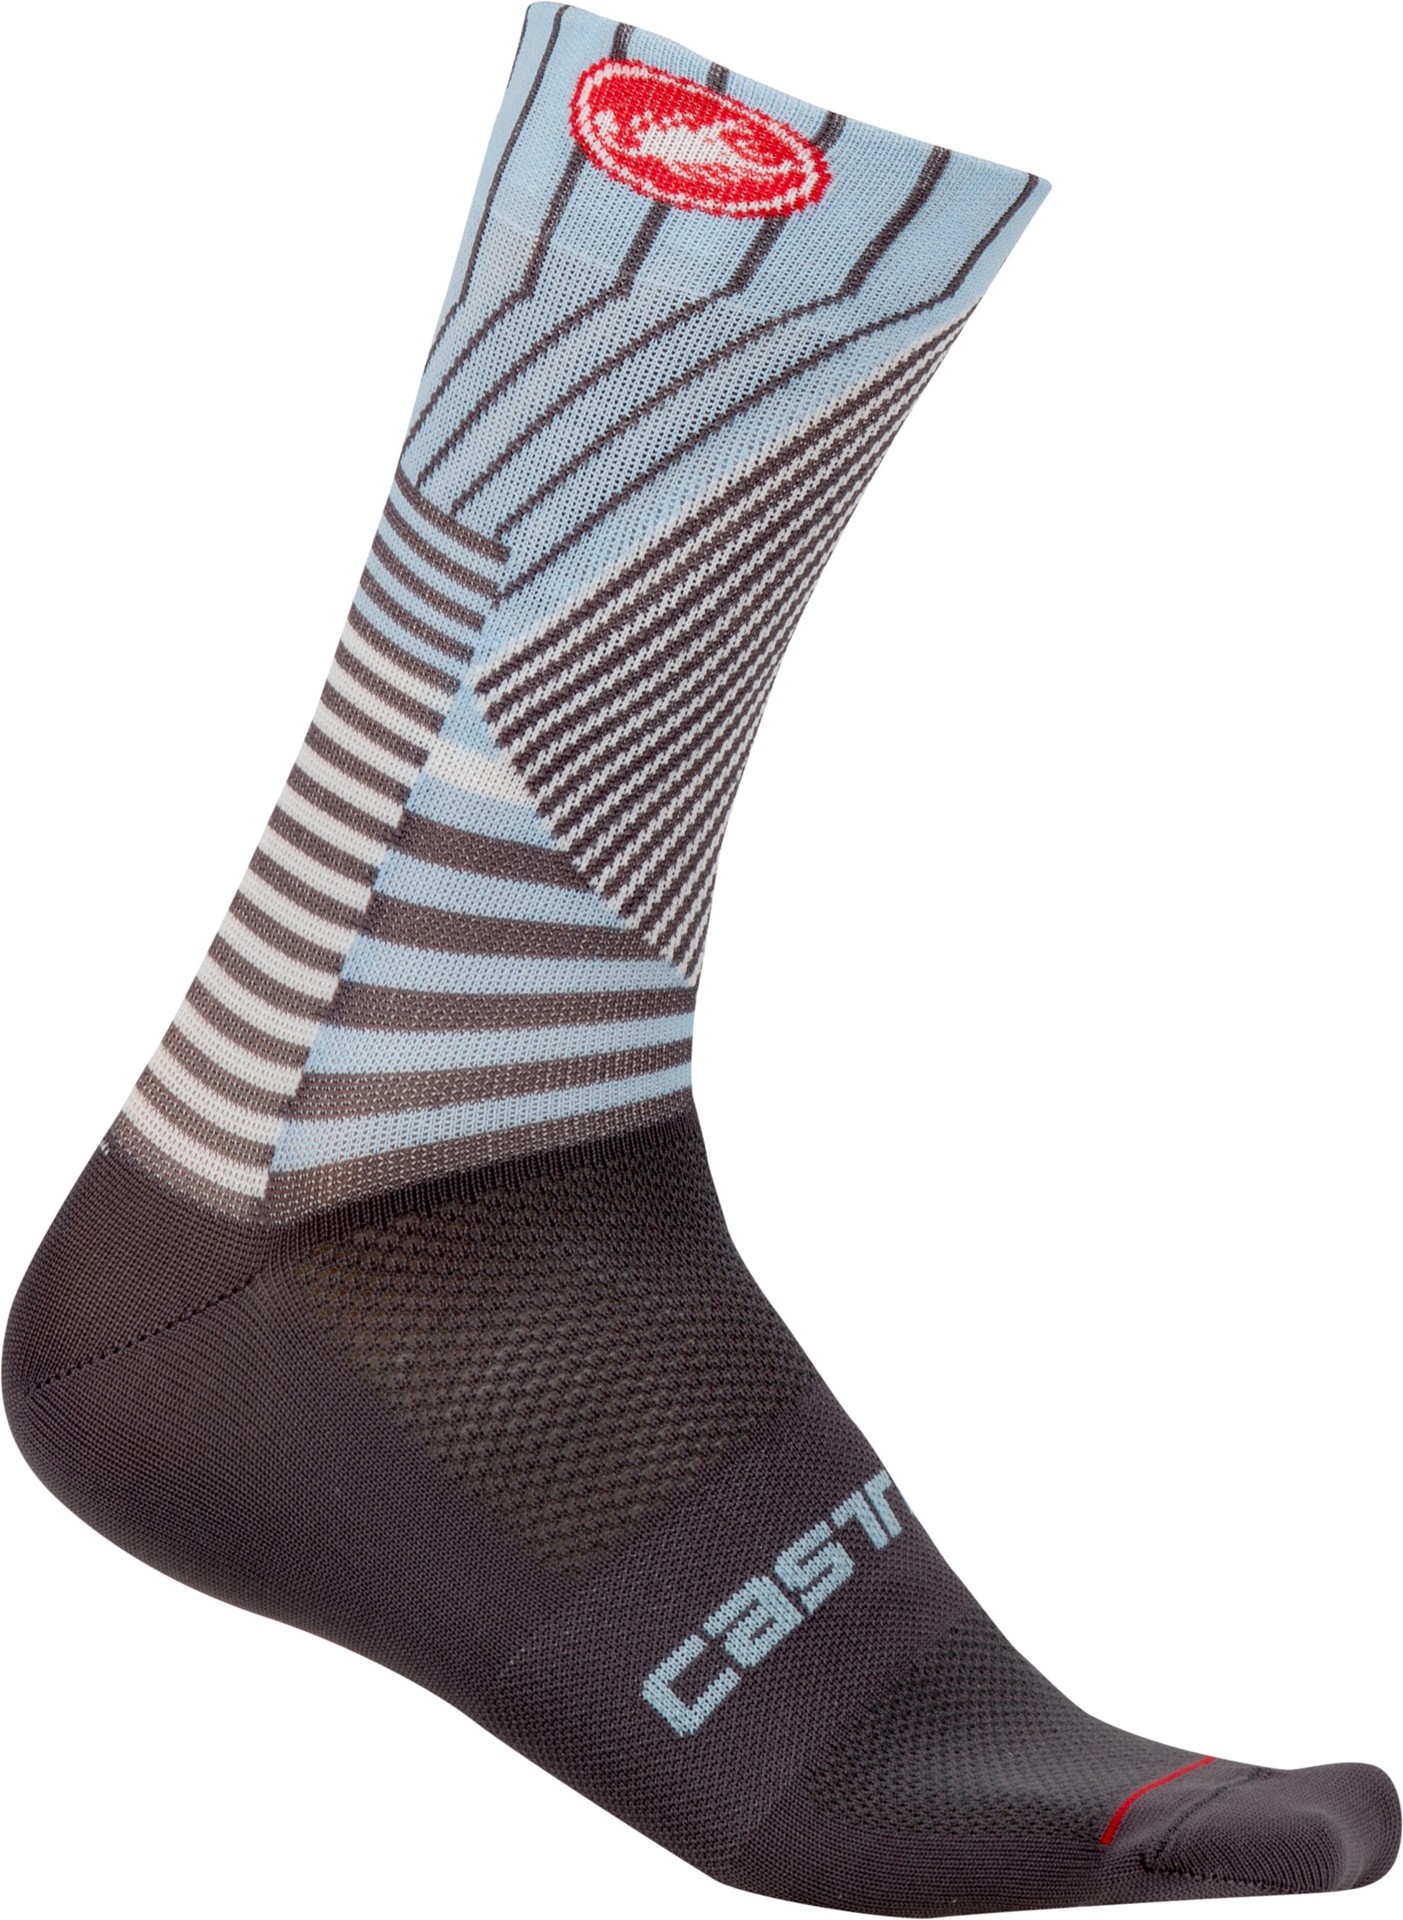 Castelli pro mesh 15 chaussures de cyclisme gris foncé dusk blue